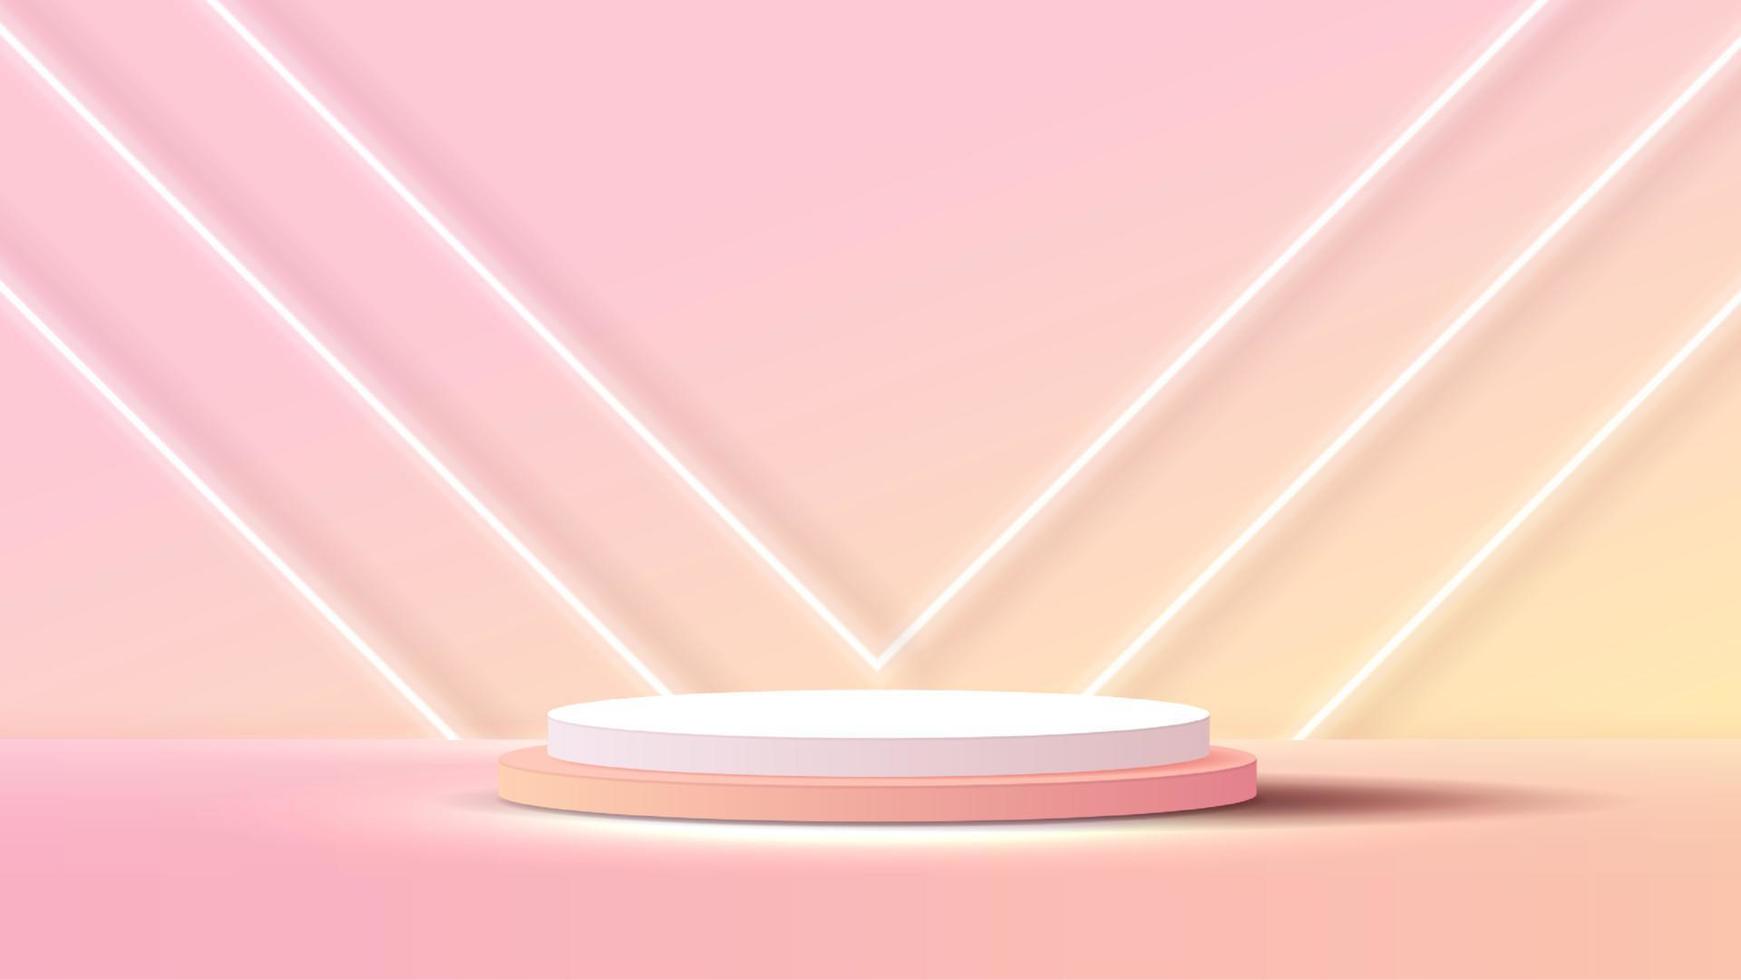 monitor podio o estar con amarillo y rosado degradado para producto presentación en pastel colores habitación. mínimo estilo ideal para presentación producto plataforma, anuncio publicitario, paquete demostración. vector. vector